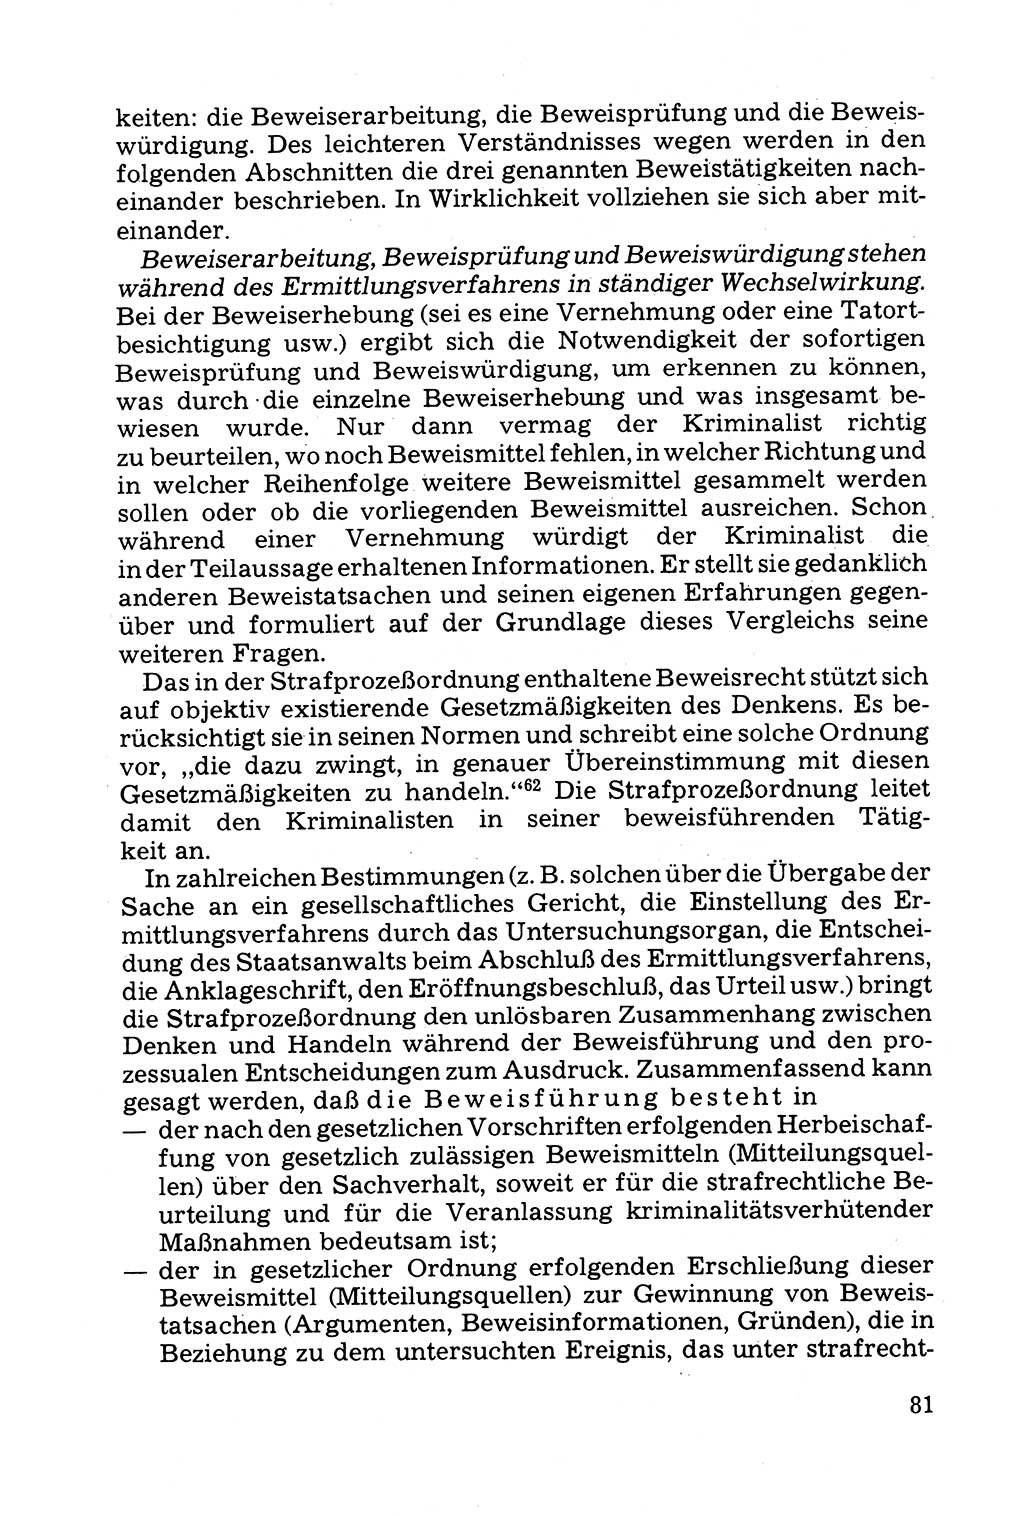 Grundfragen der Beweisführung im Ermittlungsverfahren [Deutsche Demokratische Republik (DDR)] 1980, Seite 81 (Bws.-Fhrg. EV DDR 1980, S. 81)